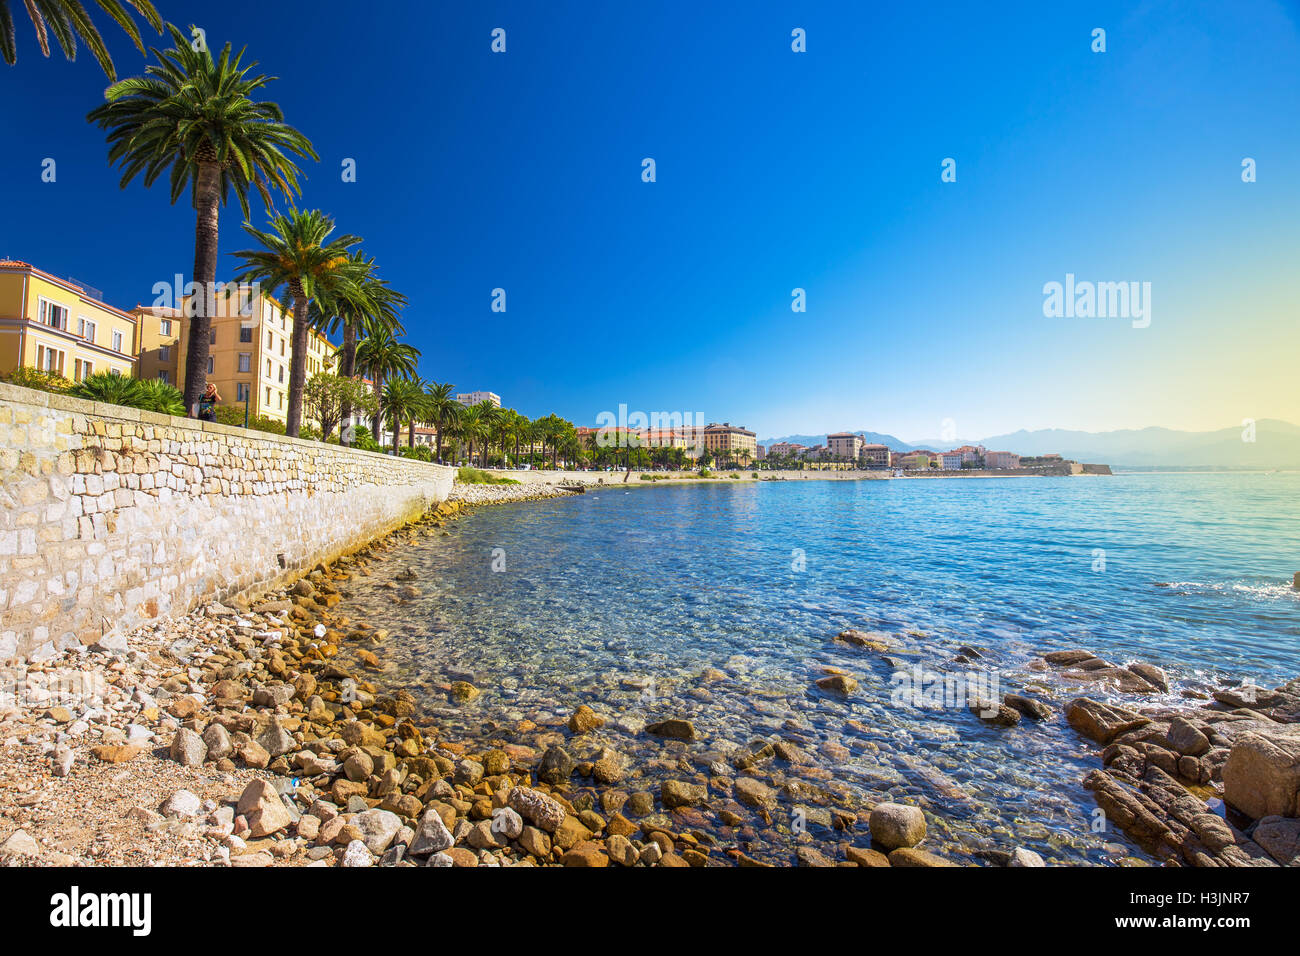 Le vieux centre-ville d'Ajaccio ville côtière avec des palmiers et de vieilles maisons typiques, Corse, France, Europe. Banque D'Images